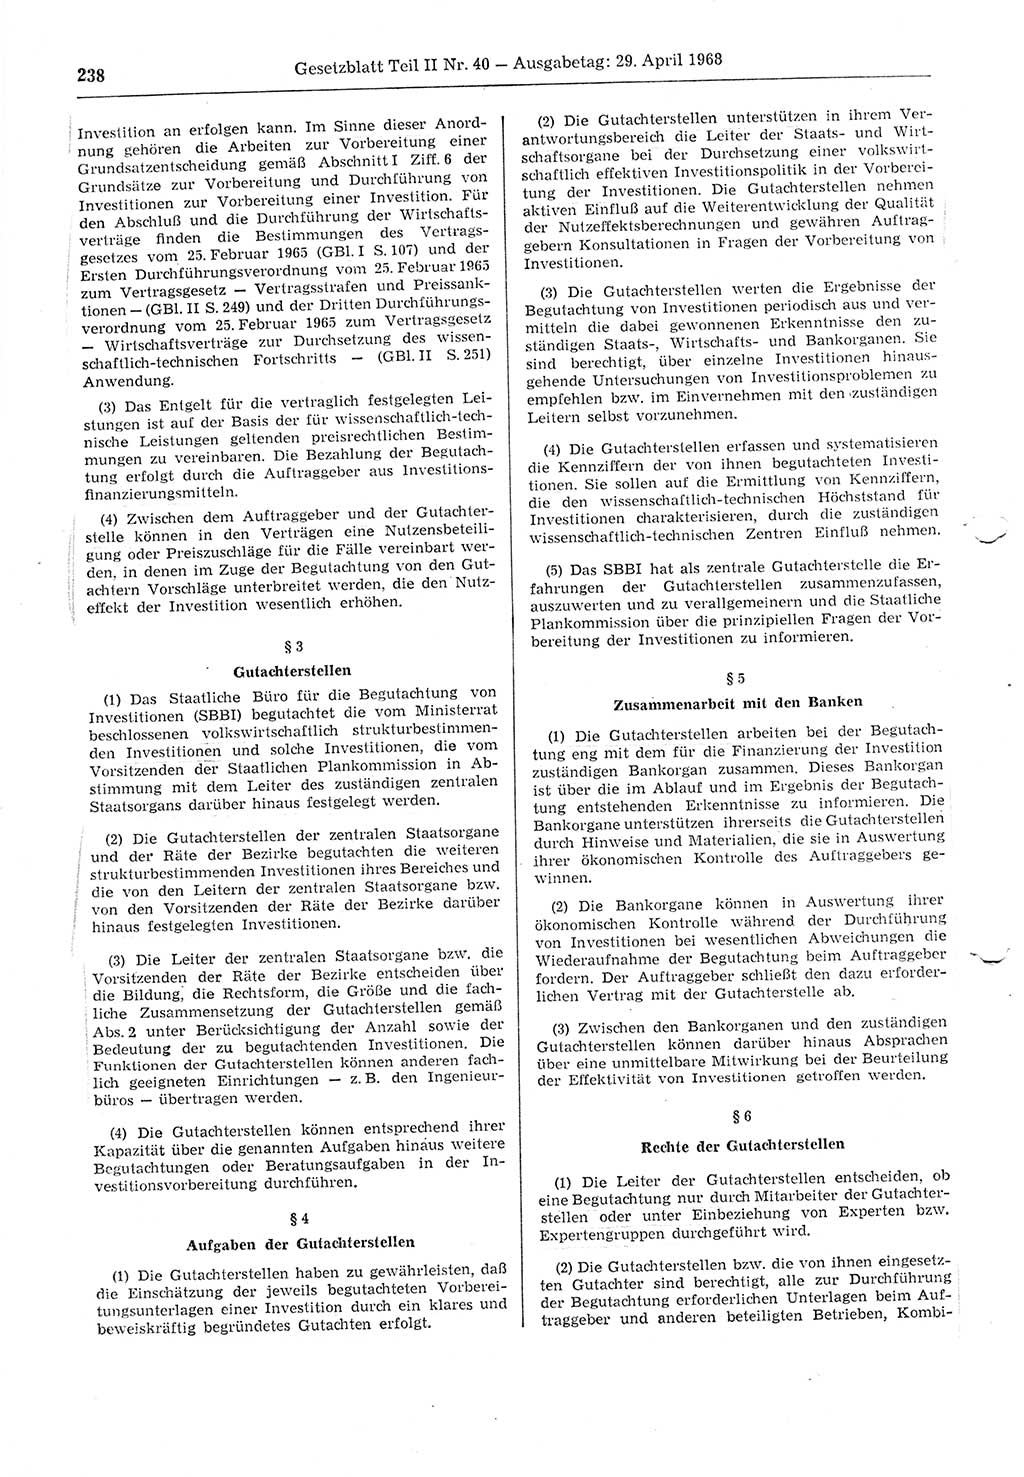 Gesetzblatt (GBl.) der Deutschen Demokratischen Republik (DDR) Teil ⅠⅠ 1968, Seite 238 (GBl. DDR ⅠⅠ 1968, S. 238)